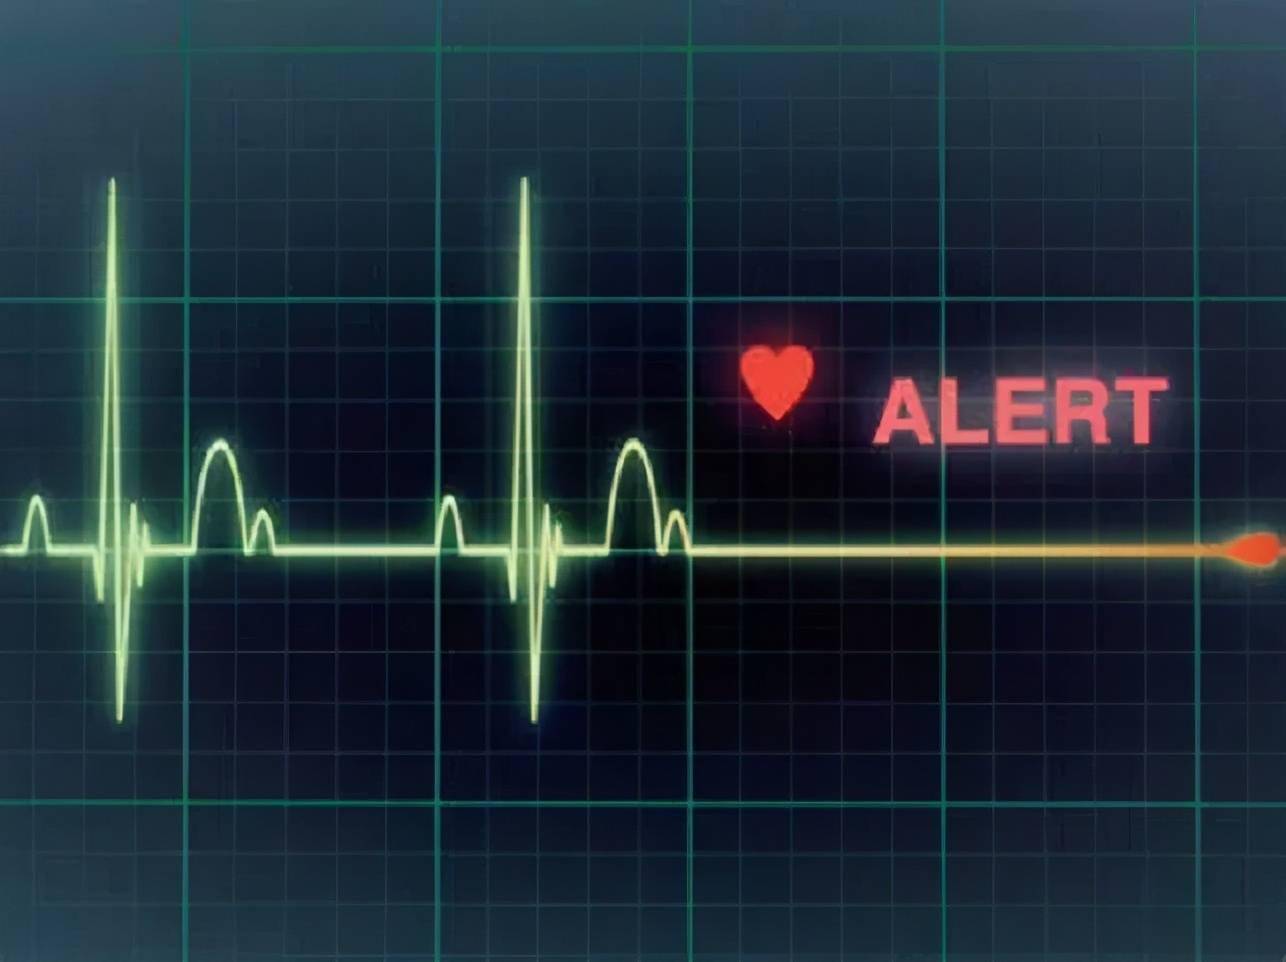 即使没有冠心病等器质性心脏病,只要存在心电异常这类功能性心脏问题